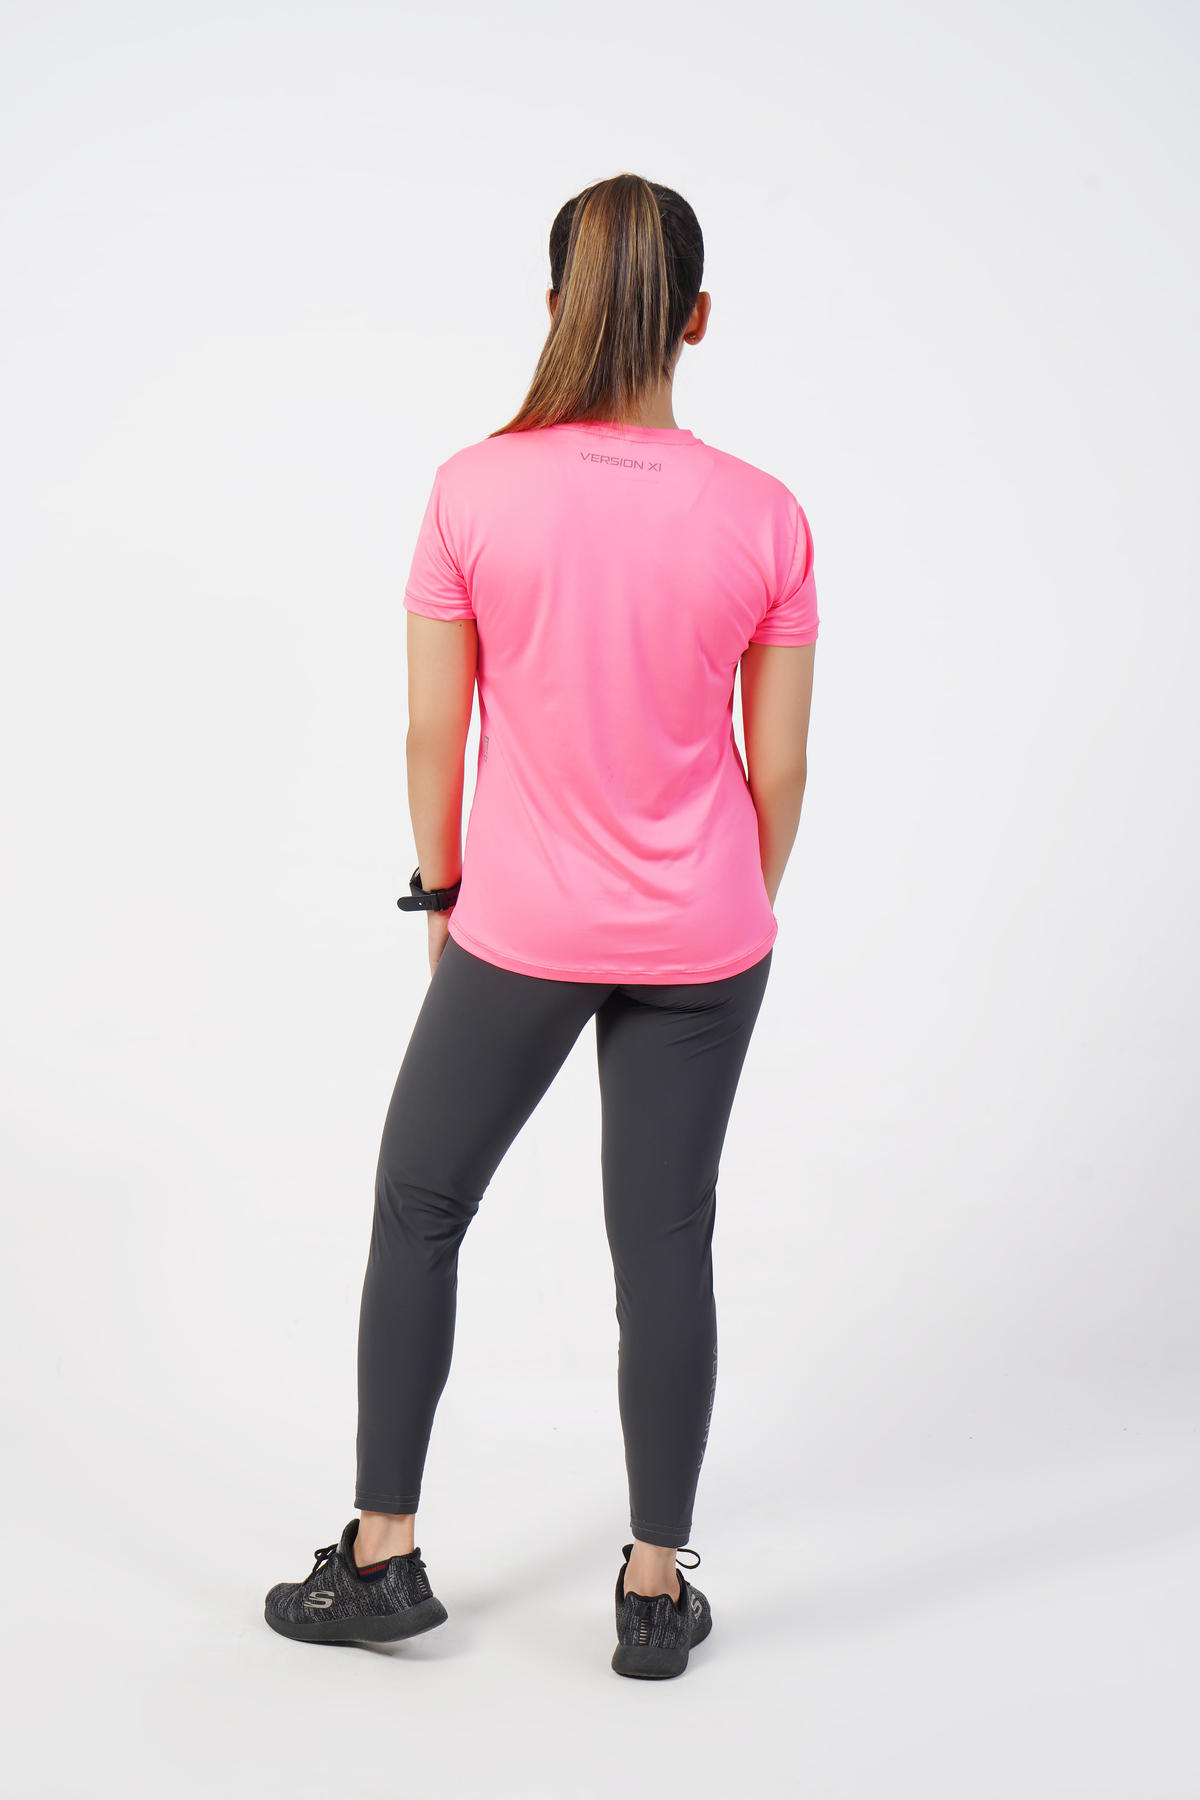 Fizz Pink T-Shirt women - activewear